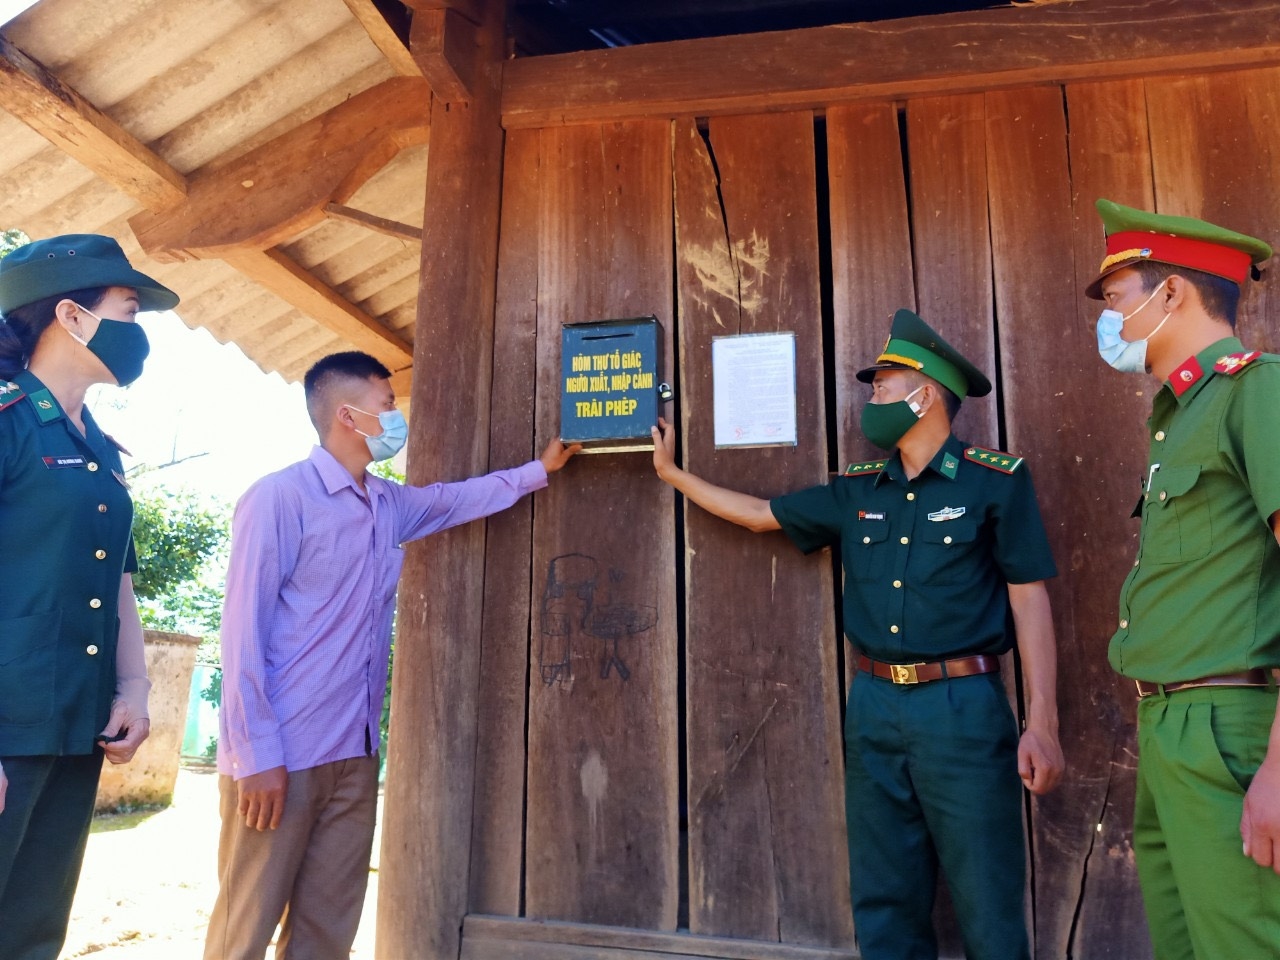 BĐBP Nghệ An tặng hòm thư tố giác người xuất nhập cảnh trái phép cho các thôn bản nhằm cảnh báo, ngăn ngừa tội phạm mua bán người qua biên giới.